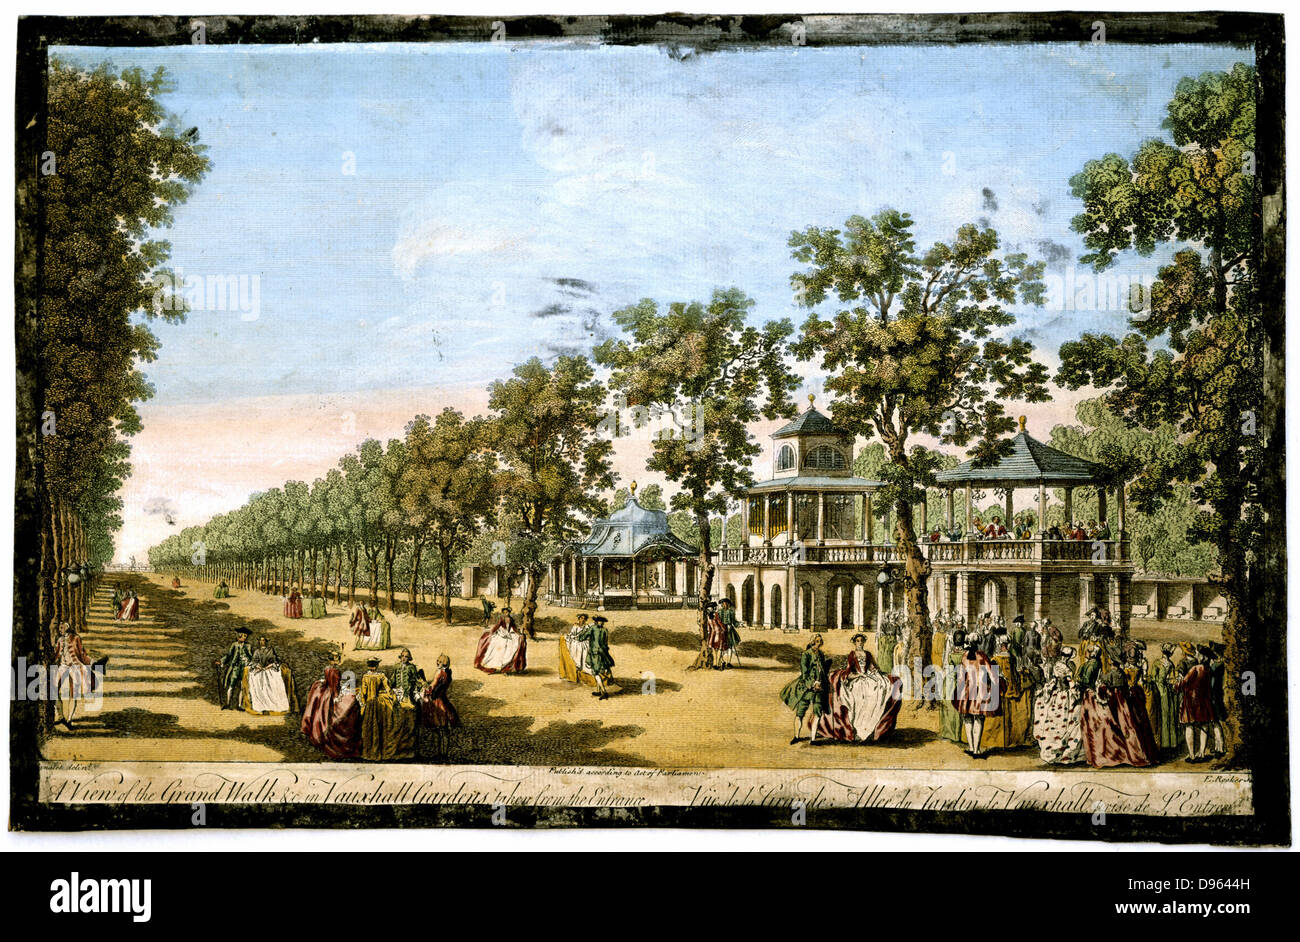 'Blick auf den Grand Spaziergang usw. in Vauxhall Gardens vom Eingang berücksichtigt. Vauxhall Gardens war einer der großen Vergnügungspark von London und dieses Bild von 1751 zeigt eine formale Allee der Bäume, ein Musikpodium (rechts), und modisch gekleideten Männer und Frauen. Kupferstich von englischer Kupferstecher und Verfasser Edward Rooker (c) 1712-1774 nach dem Gemälde von Antonio Canaletto (1697-1768), italienische. Hand - farbige Gravur c 1760. Stockfoto